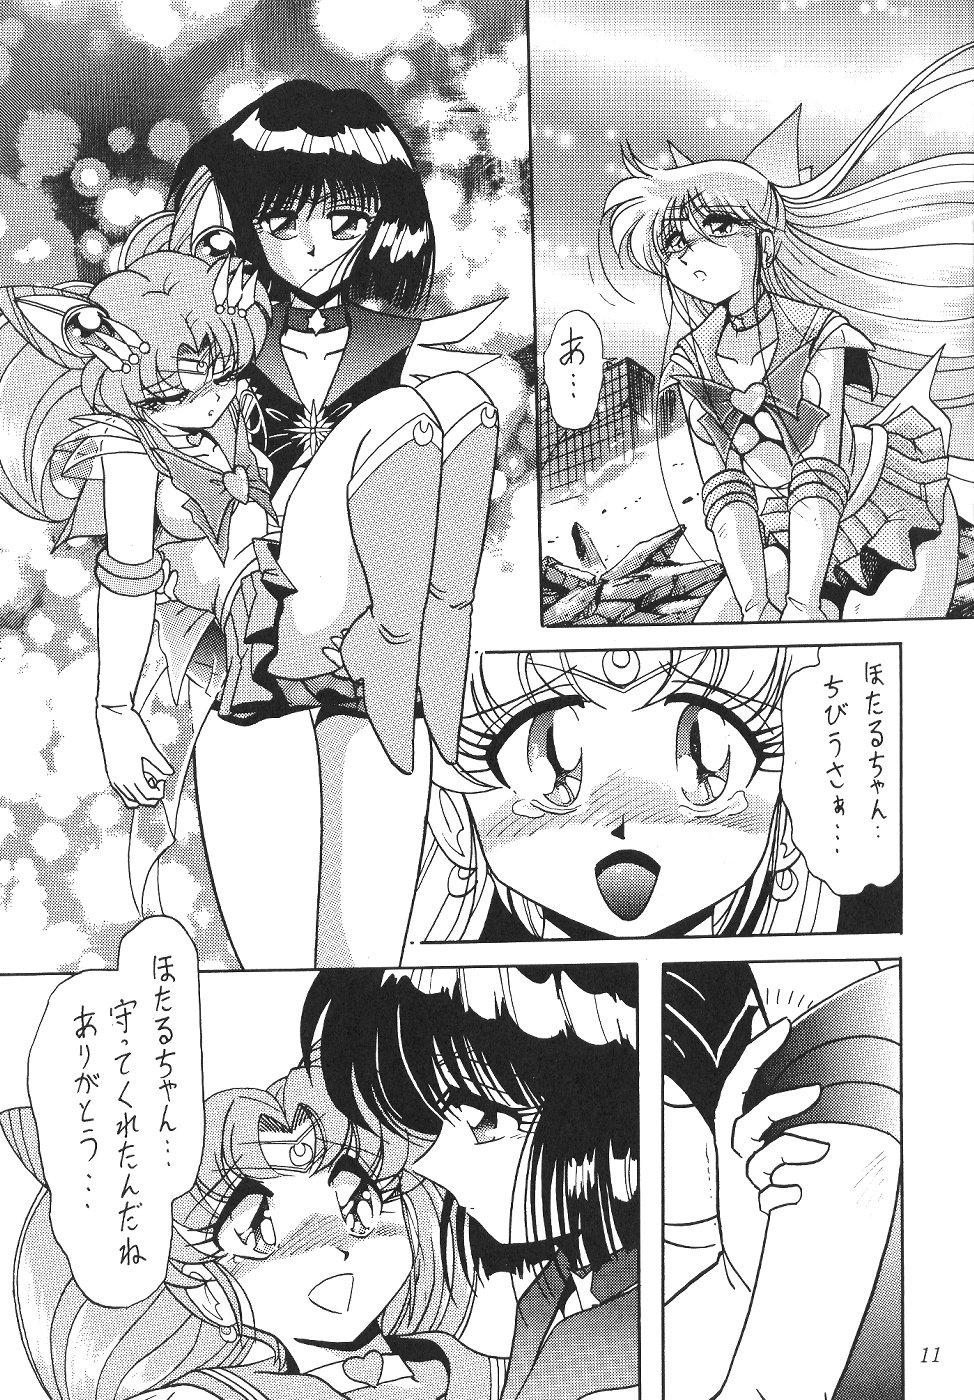 Cam Sex Silent Saturn 11 - Sailor moon Big Ass - Page 11